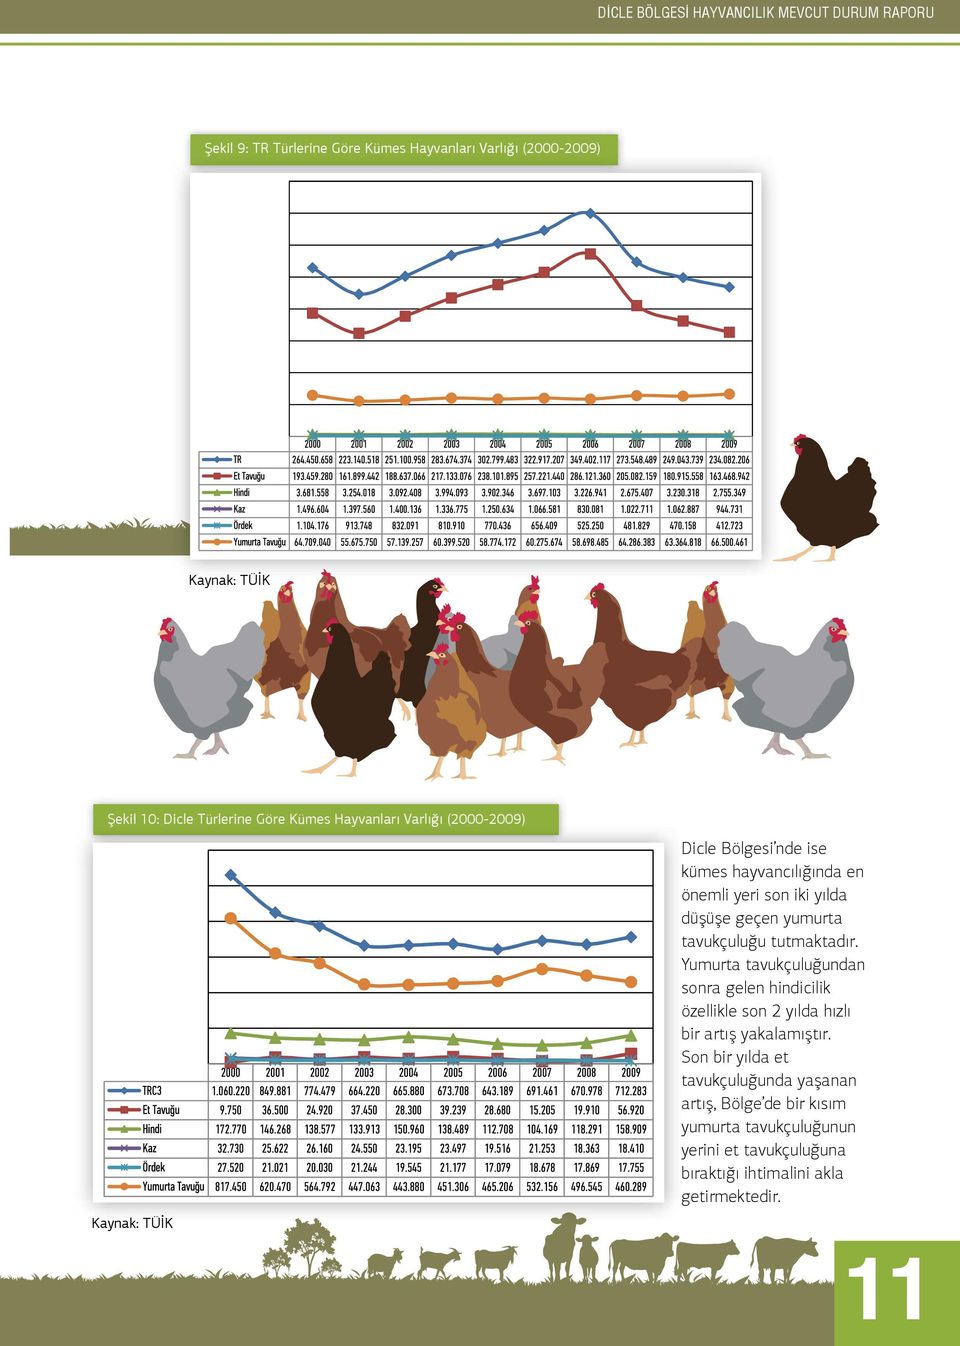 tavukçuluğu tutmaktadır. Yumurta tavukçuluğundan sonra gelen hindicilik özellikle son 2 yılda hızlı bir artış yakalamıştır.